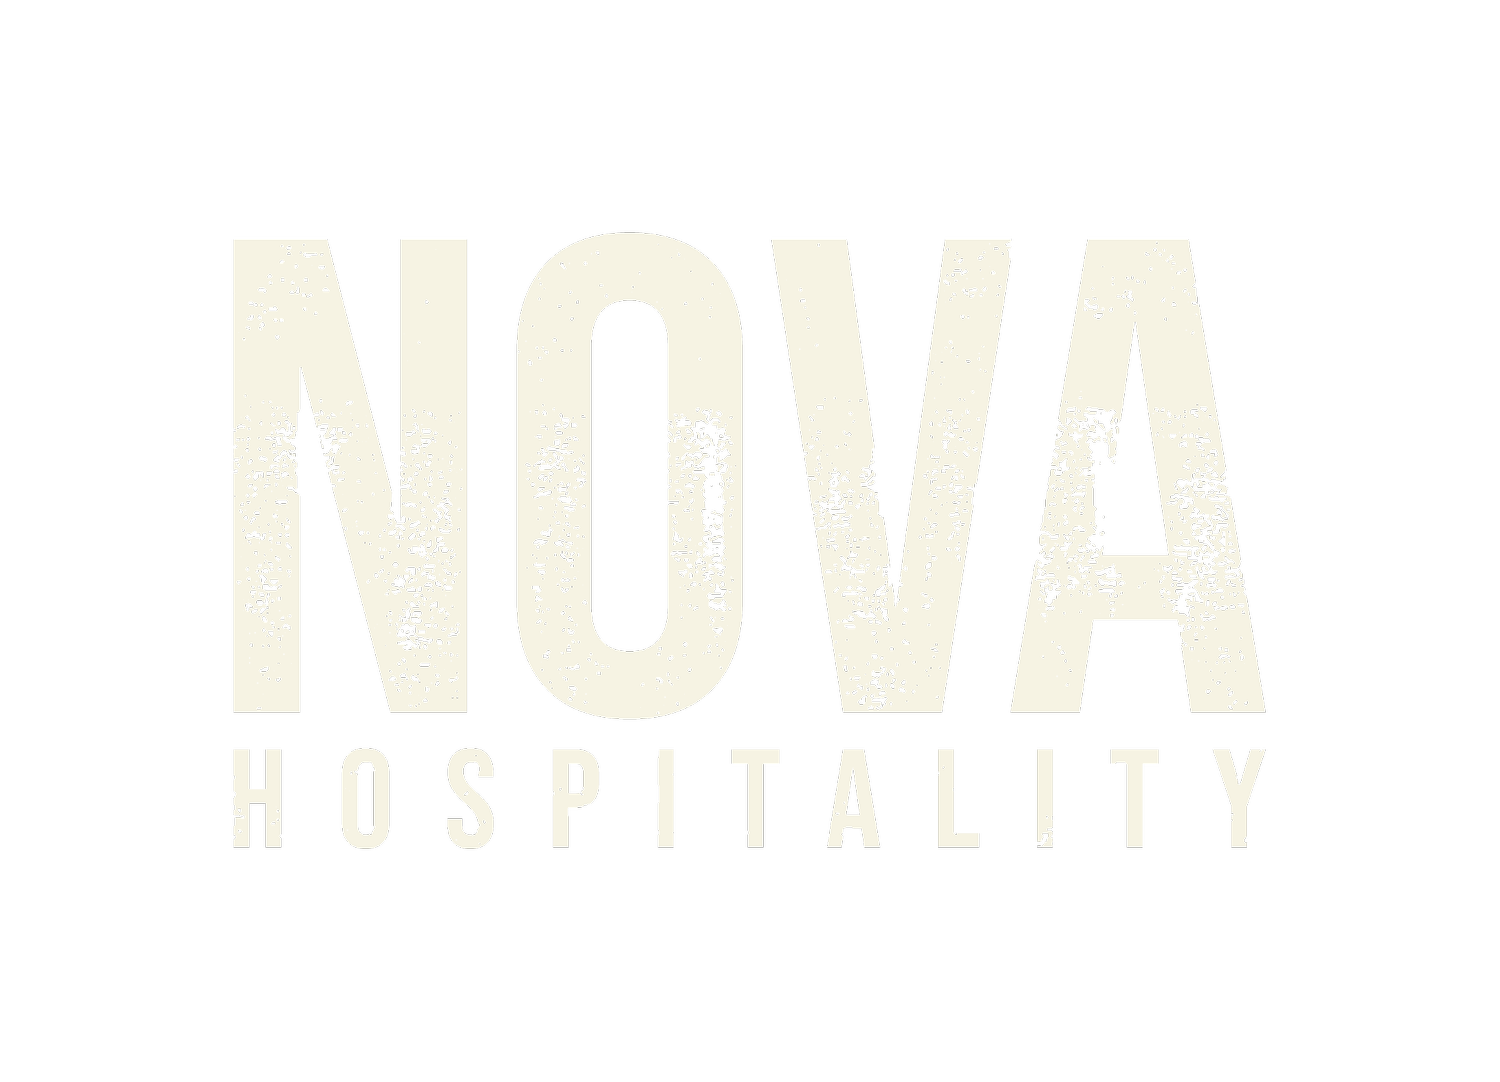 Nova Hospitality